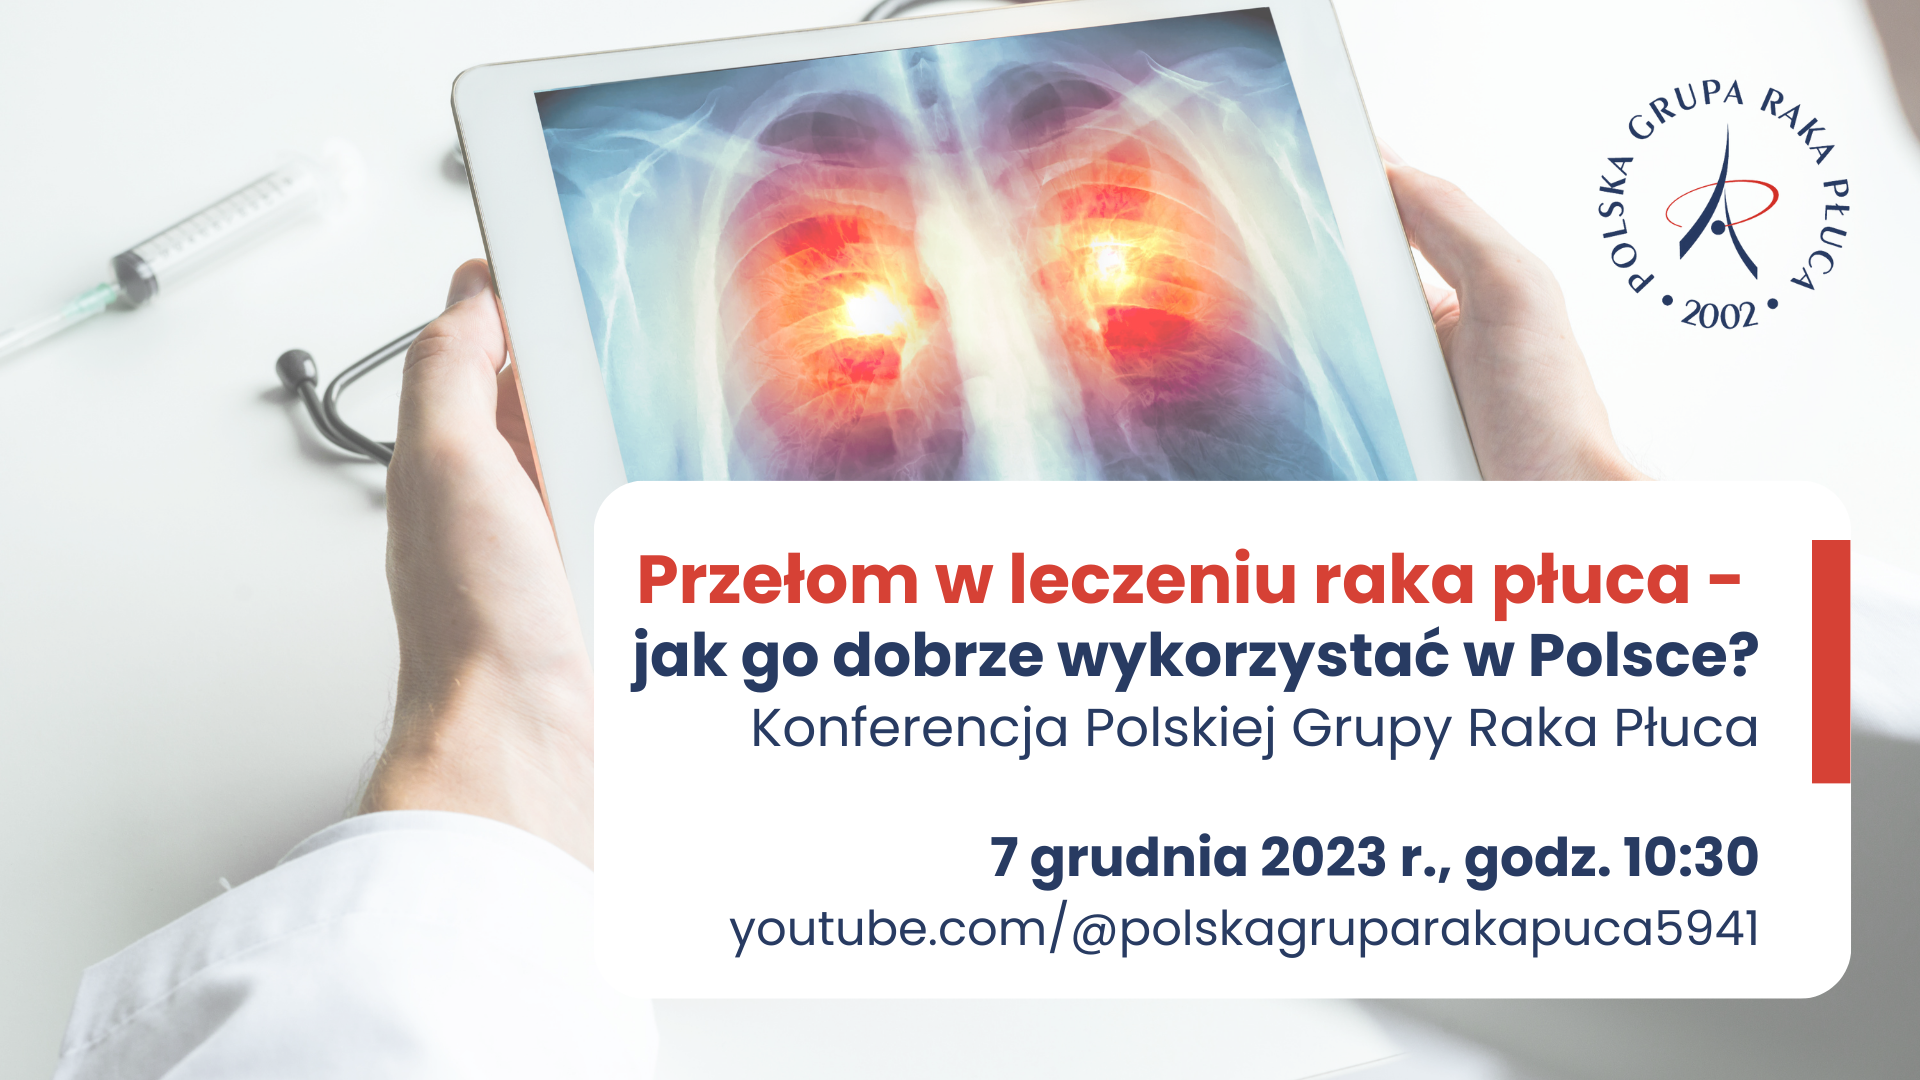 Prof Maciej Krzakowski Przyszłość Onkologii Leży W łączeniu Najskuteczniejszych Metod Leczenia 9964